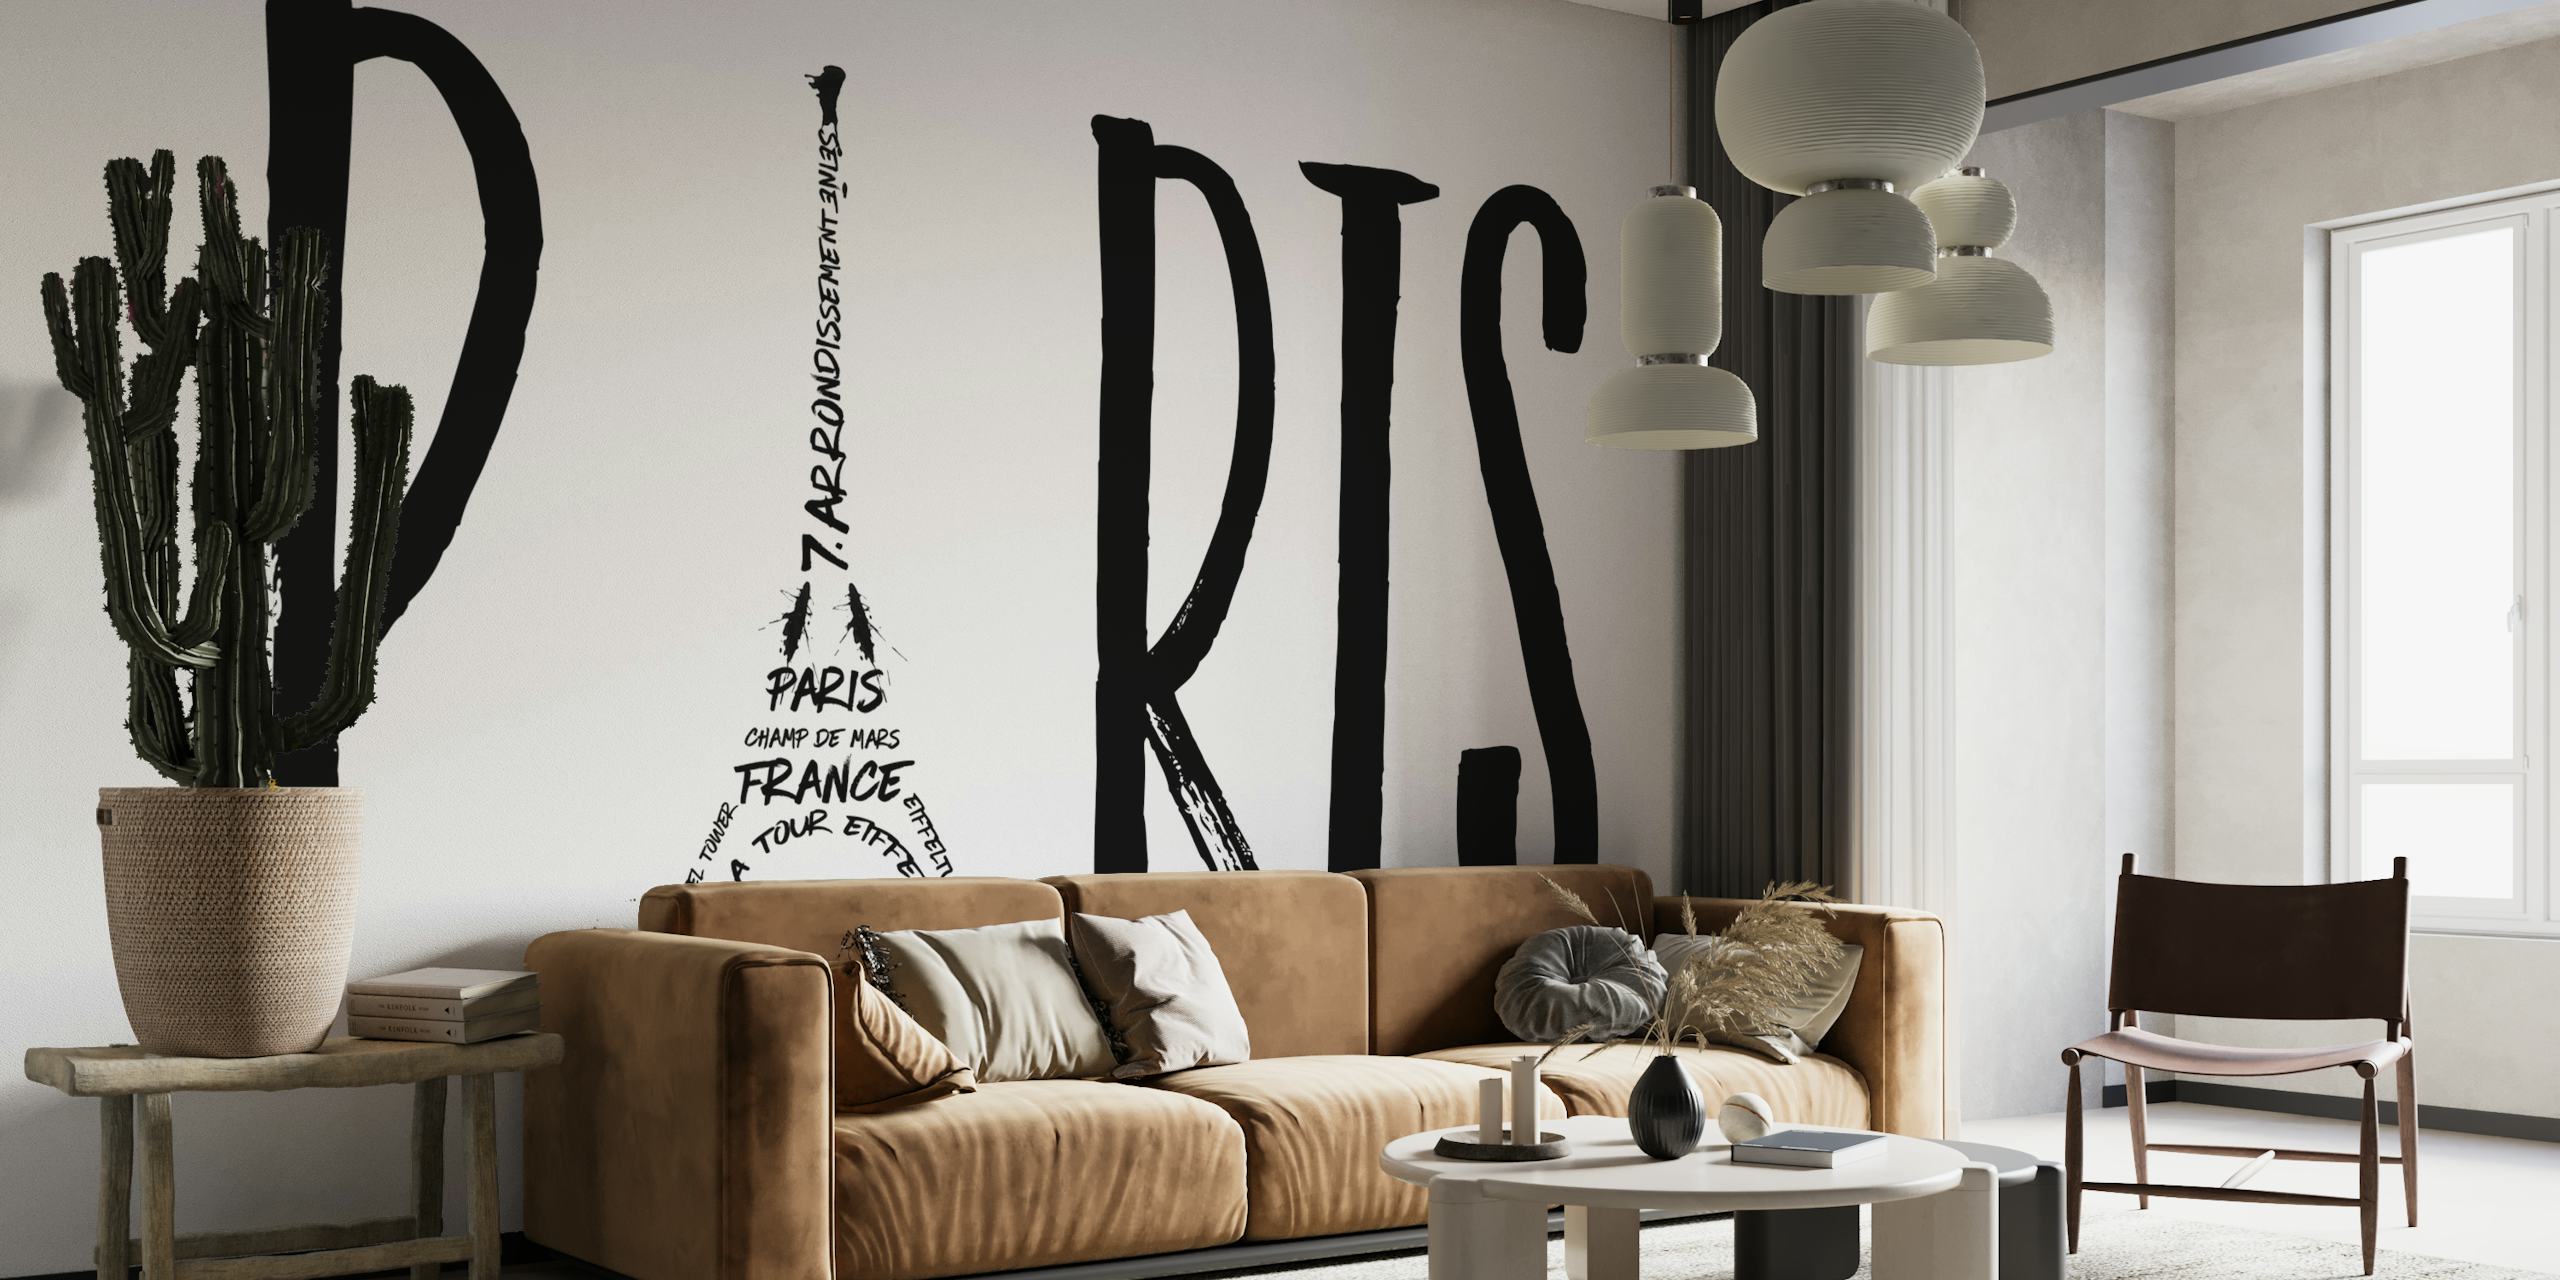 Černobílé pařížské typografické umění s Eiffelovou věží integrovanou do designu